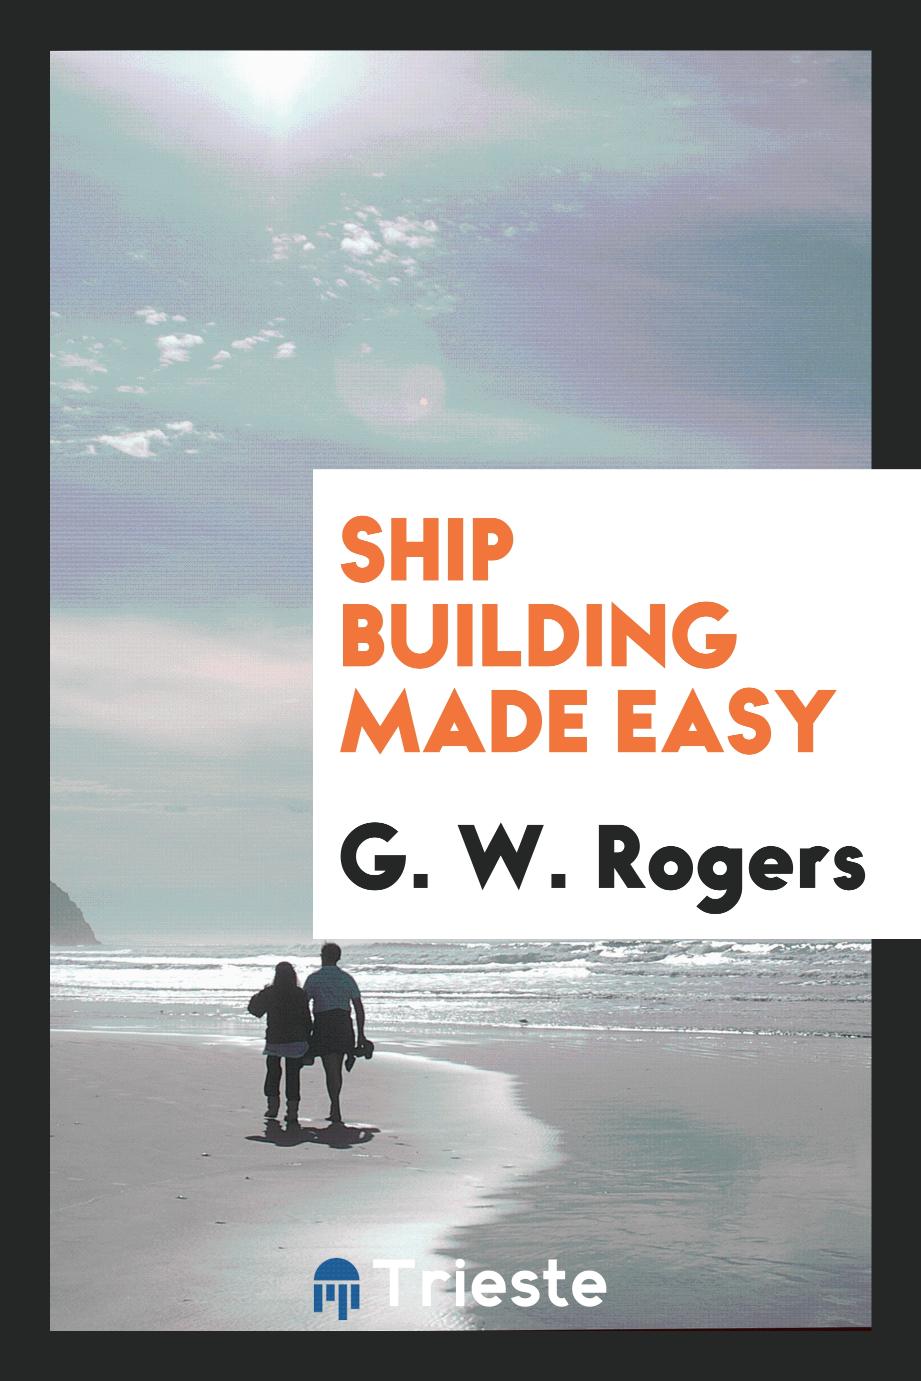 Ship building made easy